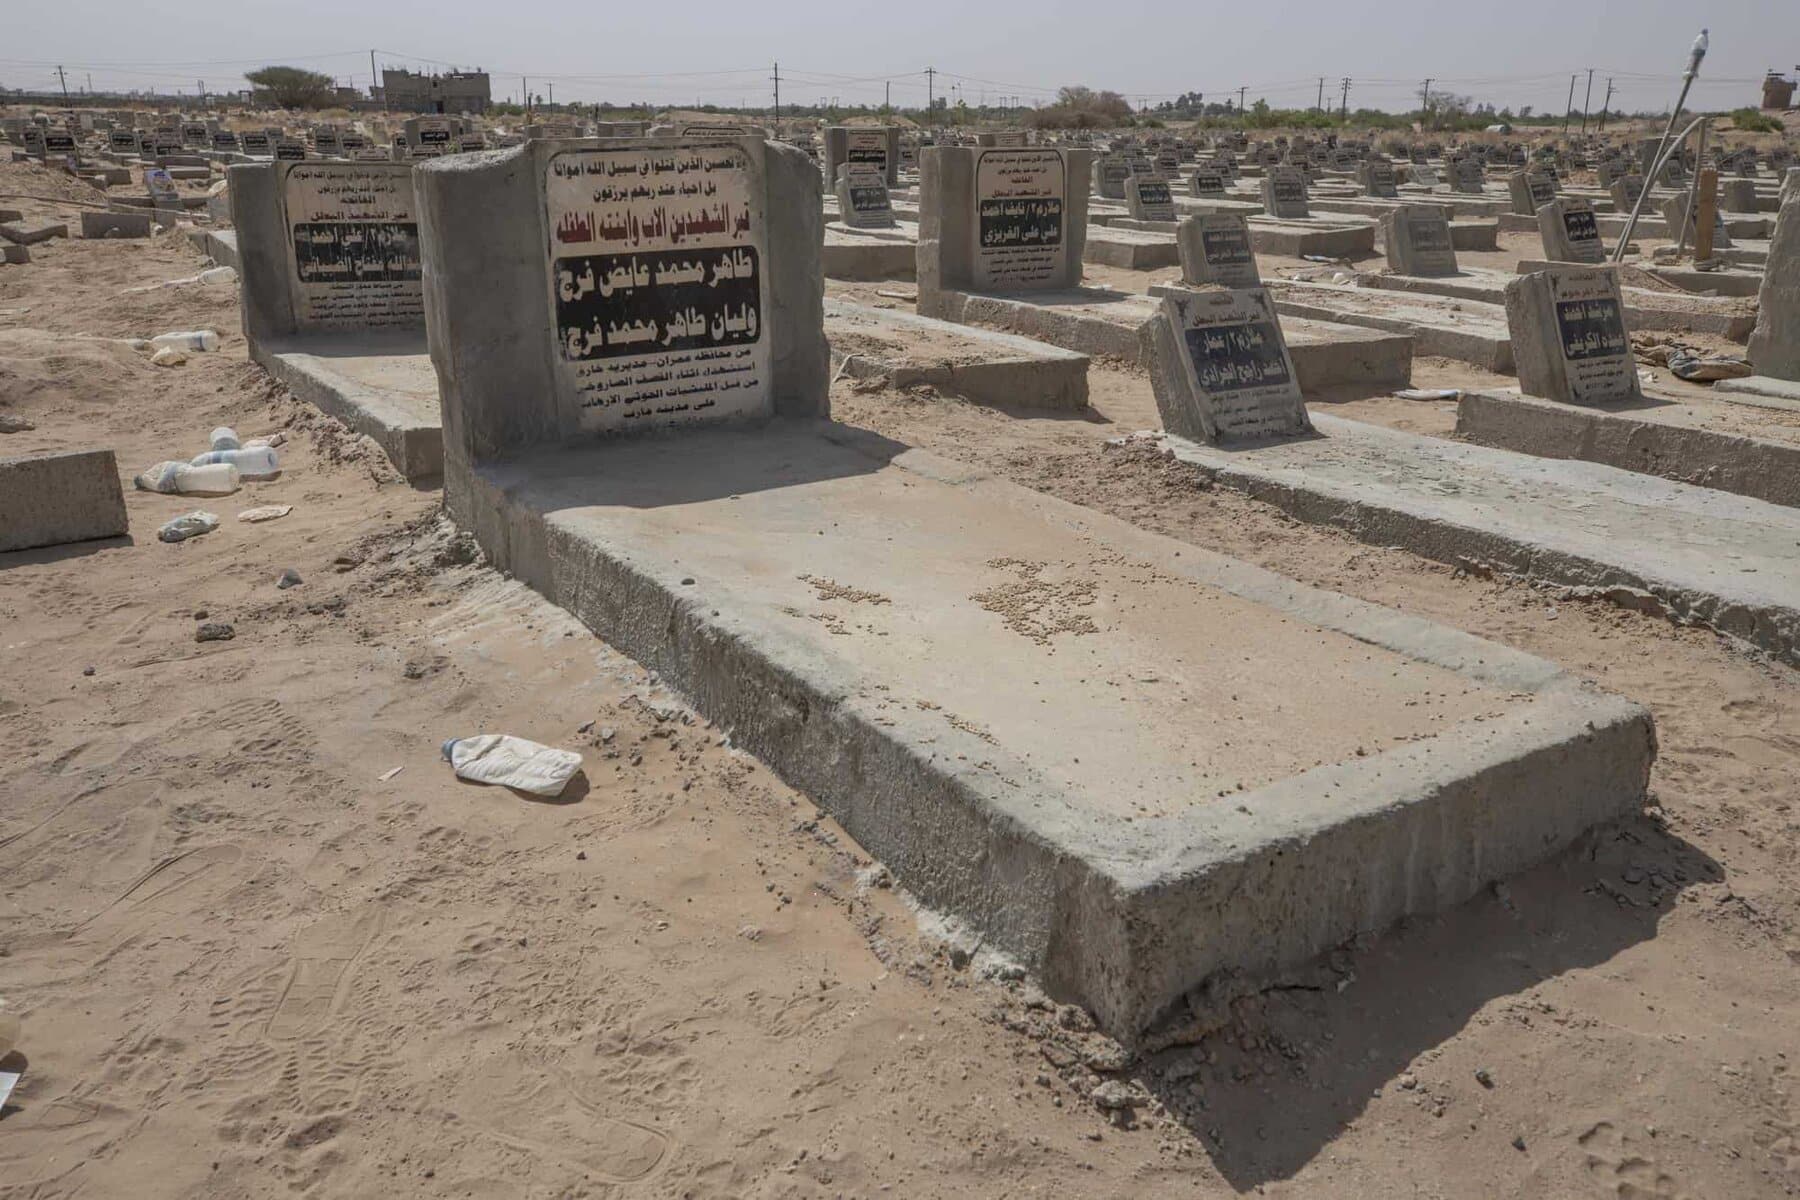 إحدى المقابر في اليمن - مأرب alarabtrend.com